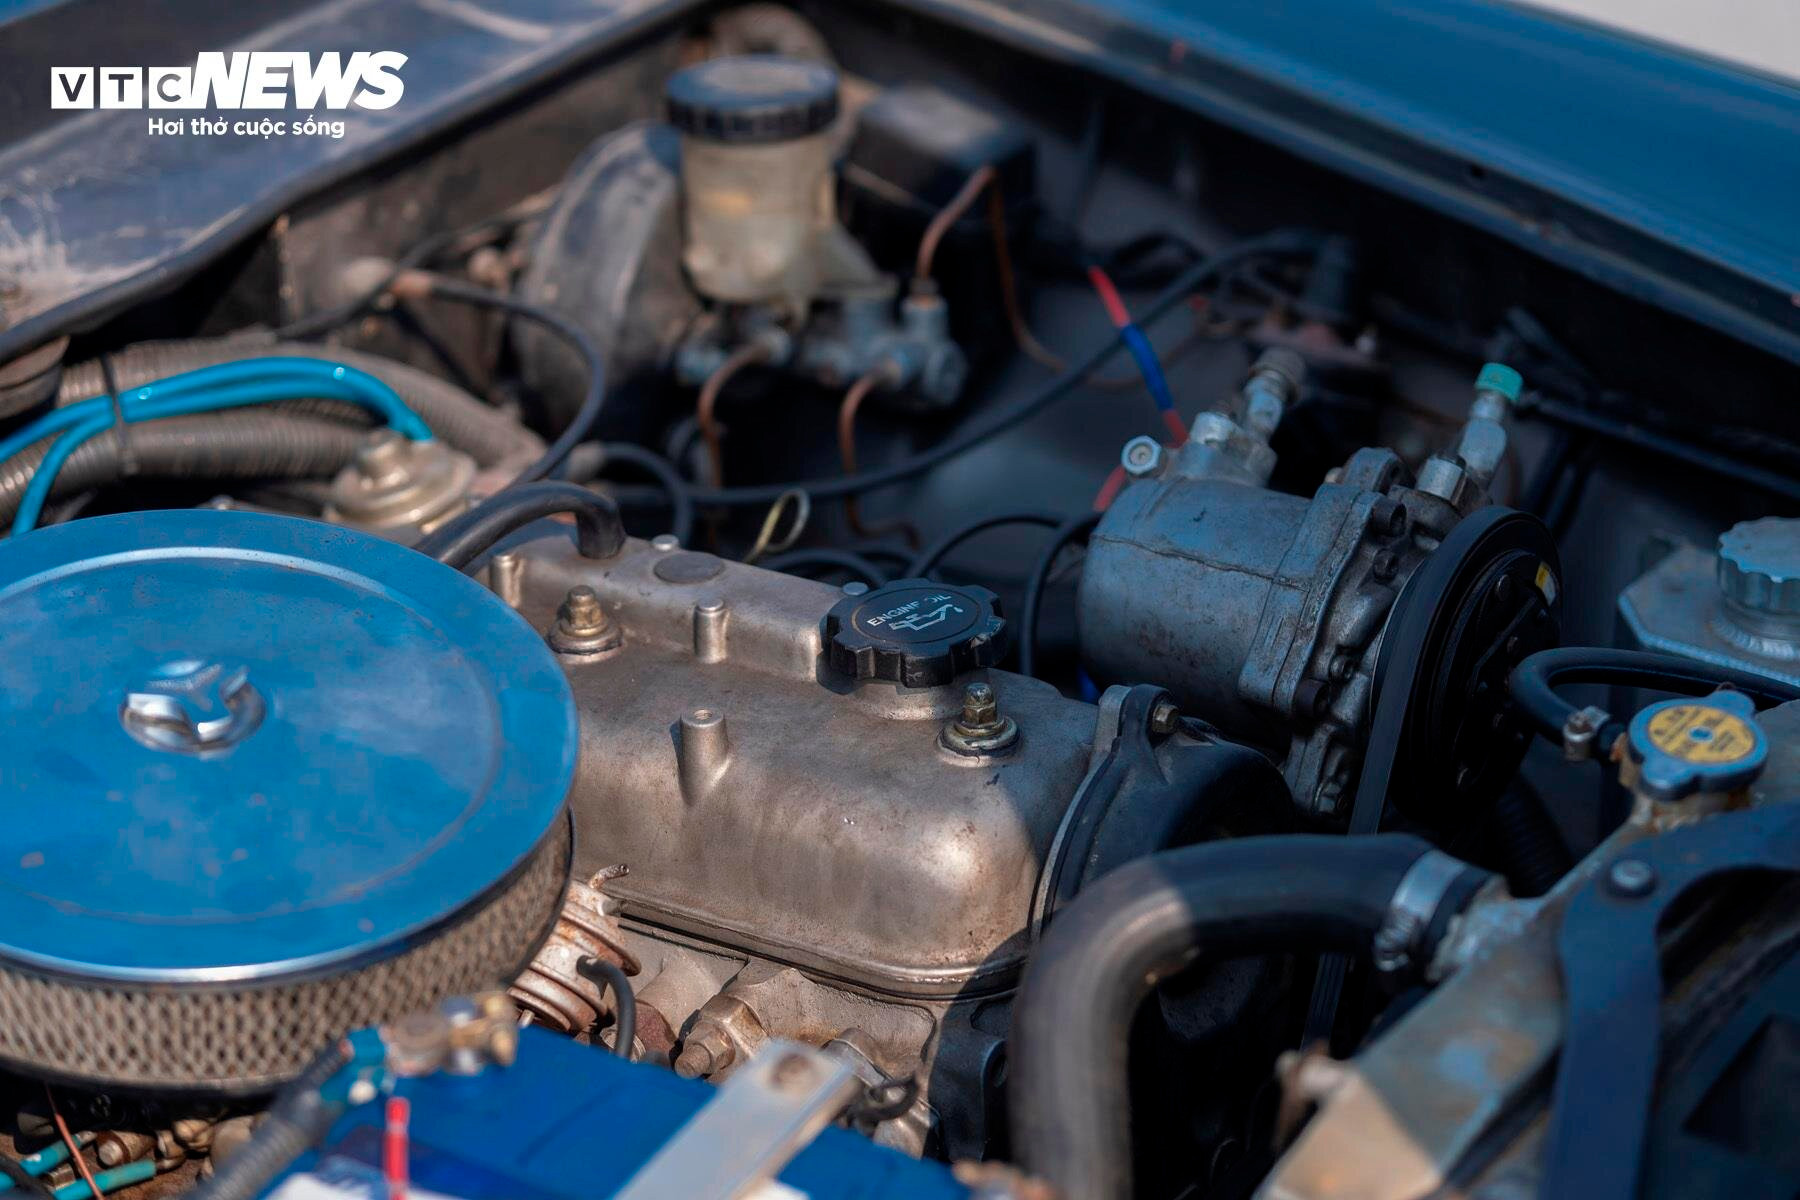 Khối động cơ 1.6L của Datsun Fairlady 1969 vẫn hoạt động ổn định sau hơn 55 năm vận hành.